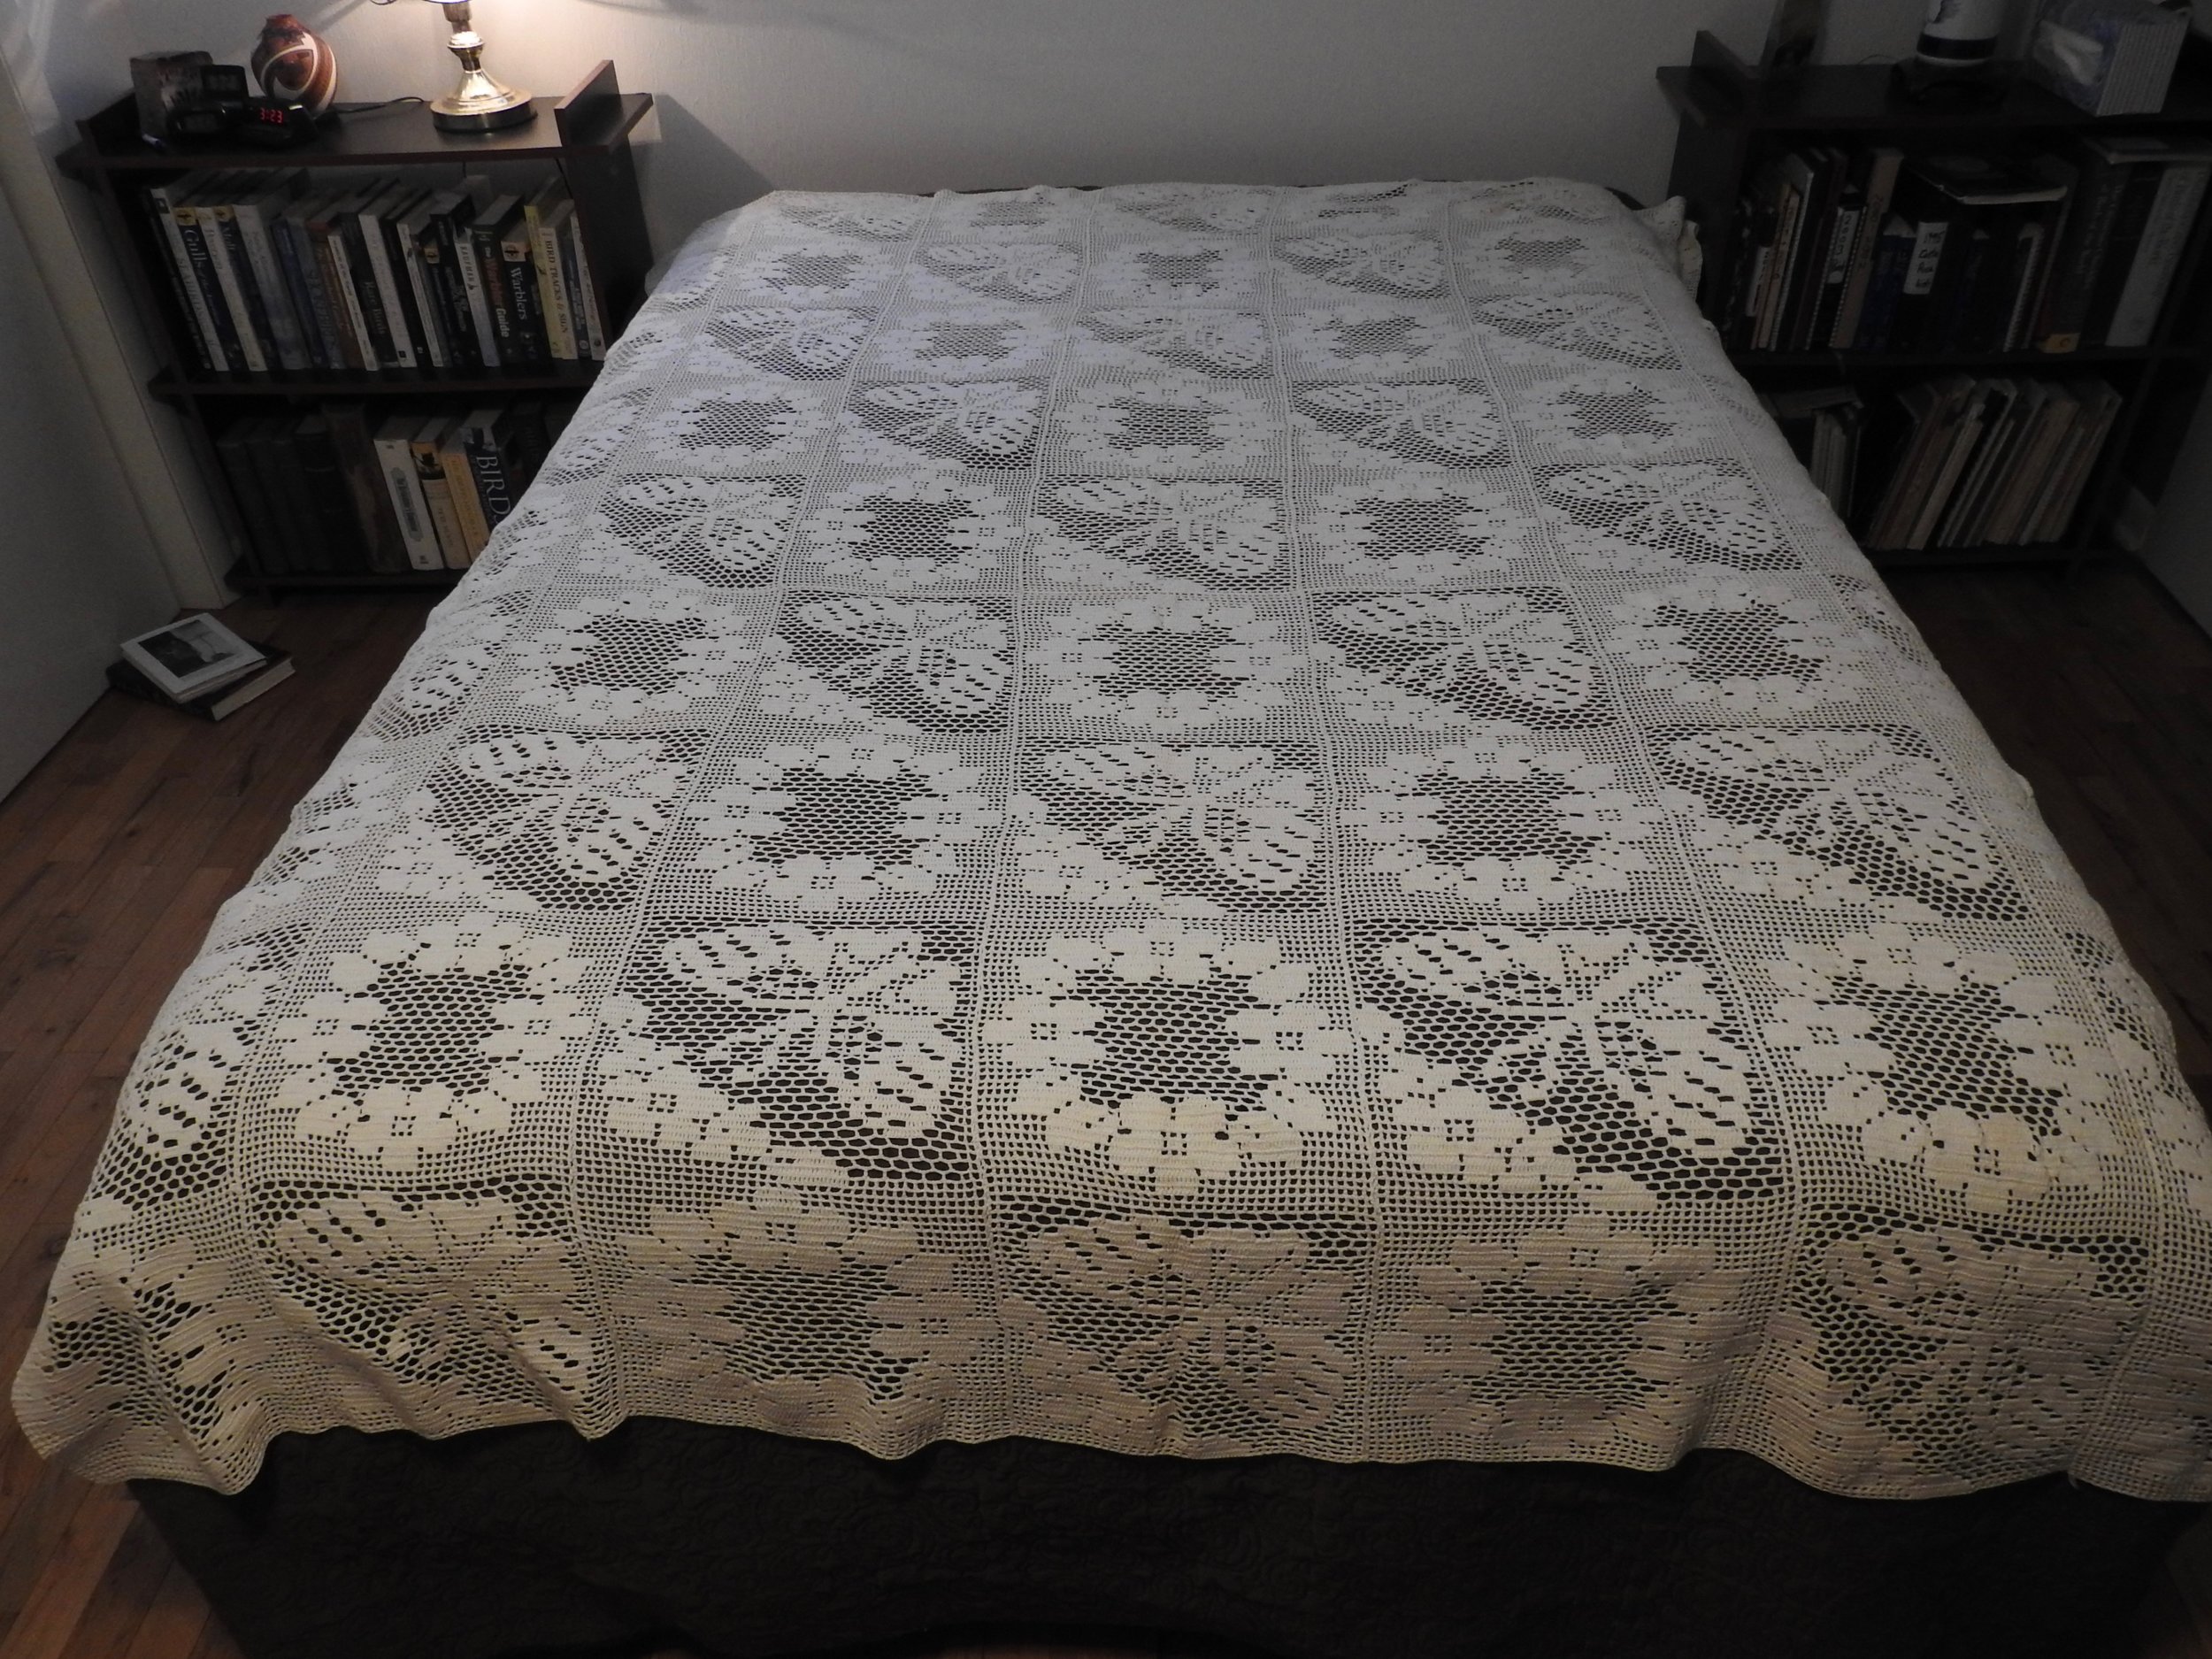 Crocheted Bedspread, Crocheted by Karen Moss, donated by Wayne &amp; Karen Moss, 70 x 87.  